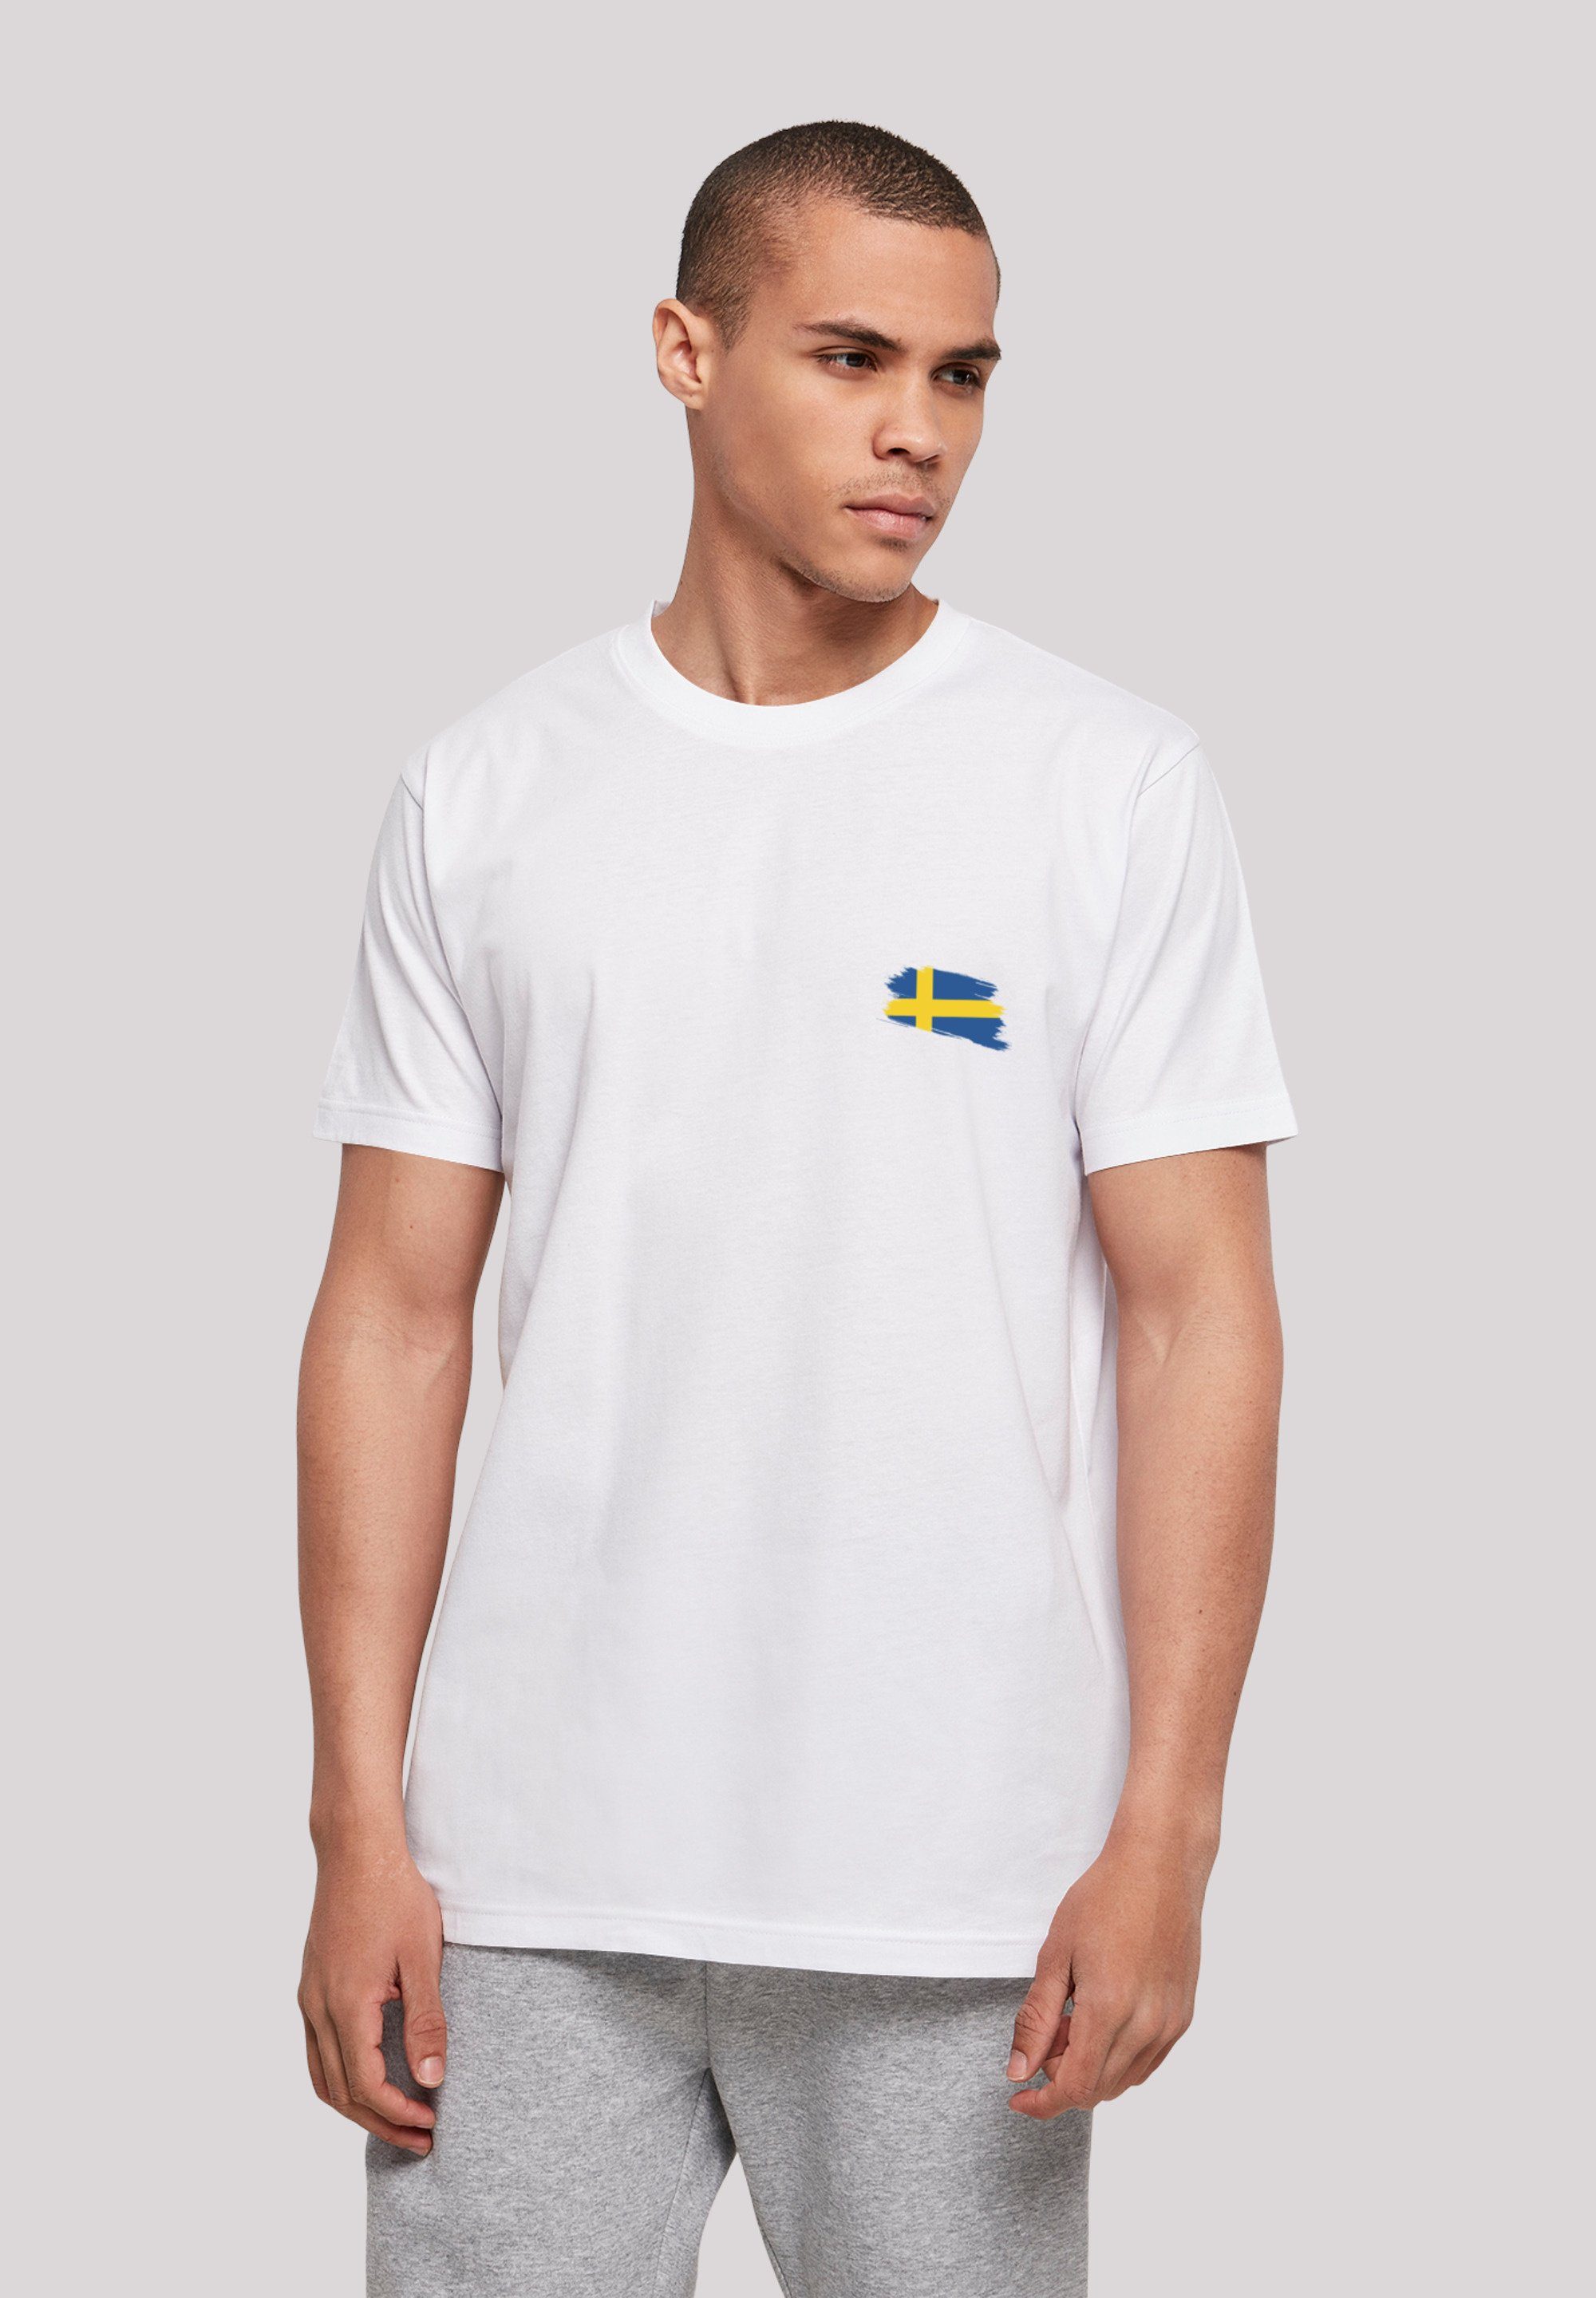 F4NT4STIC T-Shirt Schweden Flagge Sweden Print weiß